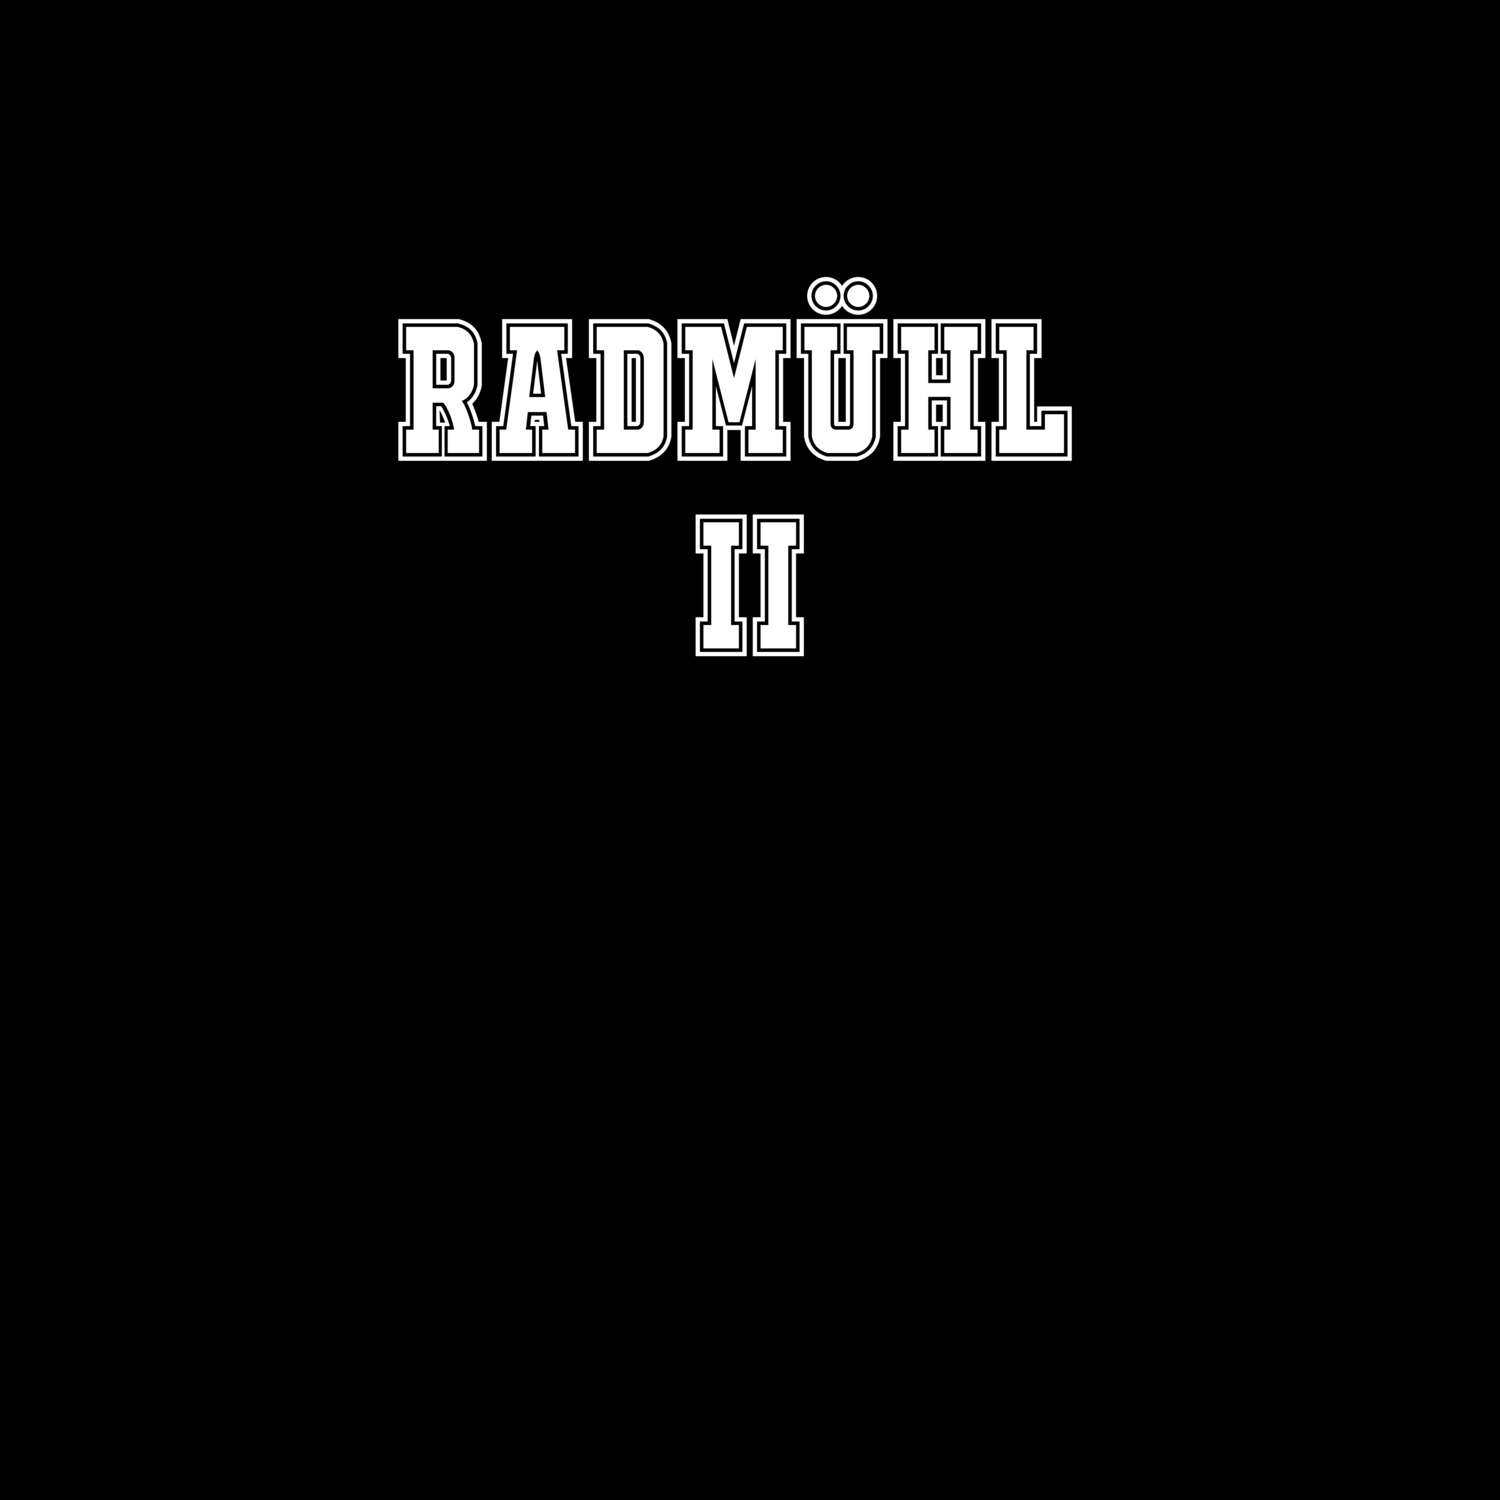 Radmühl II T-Shirt »Classic«